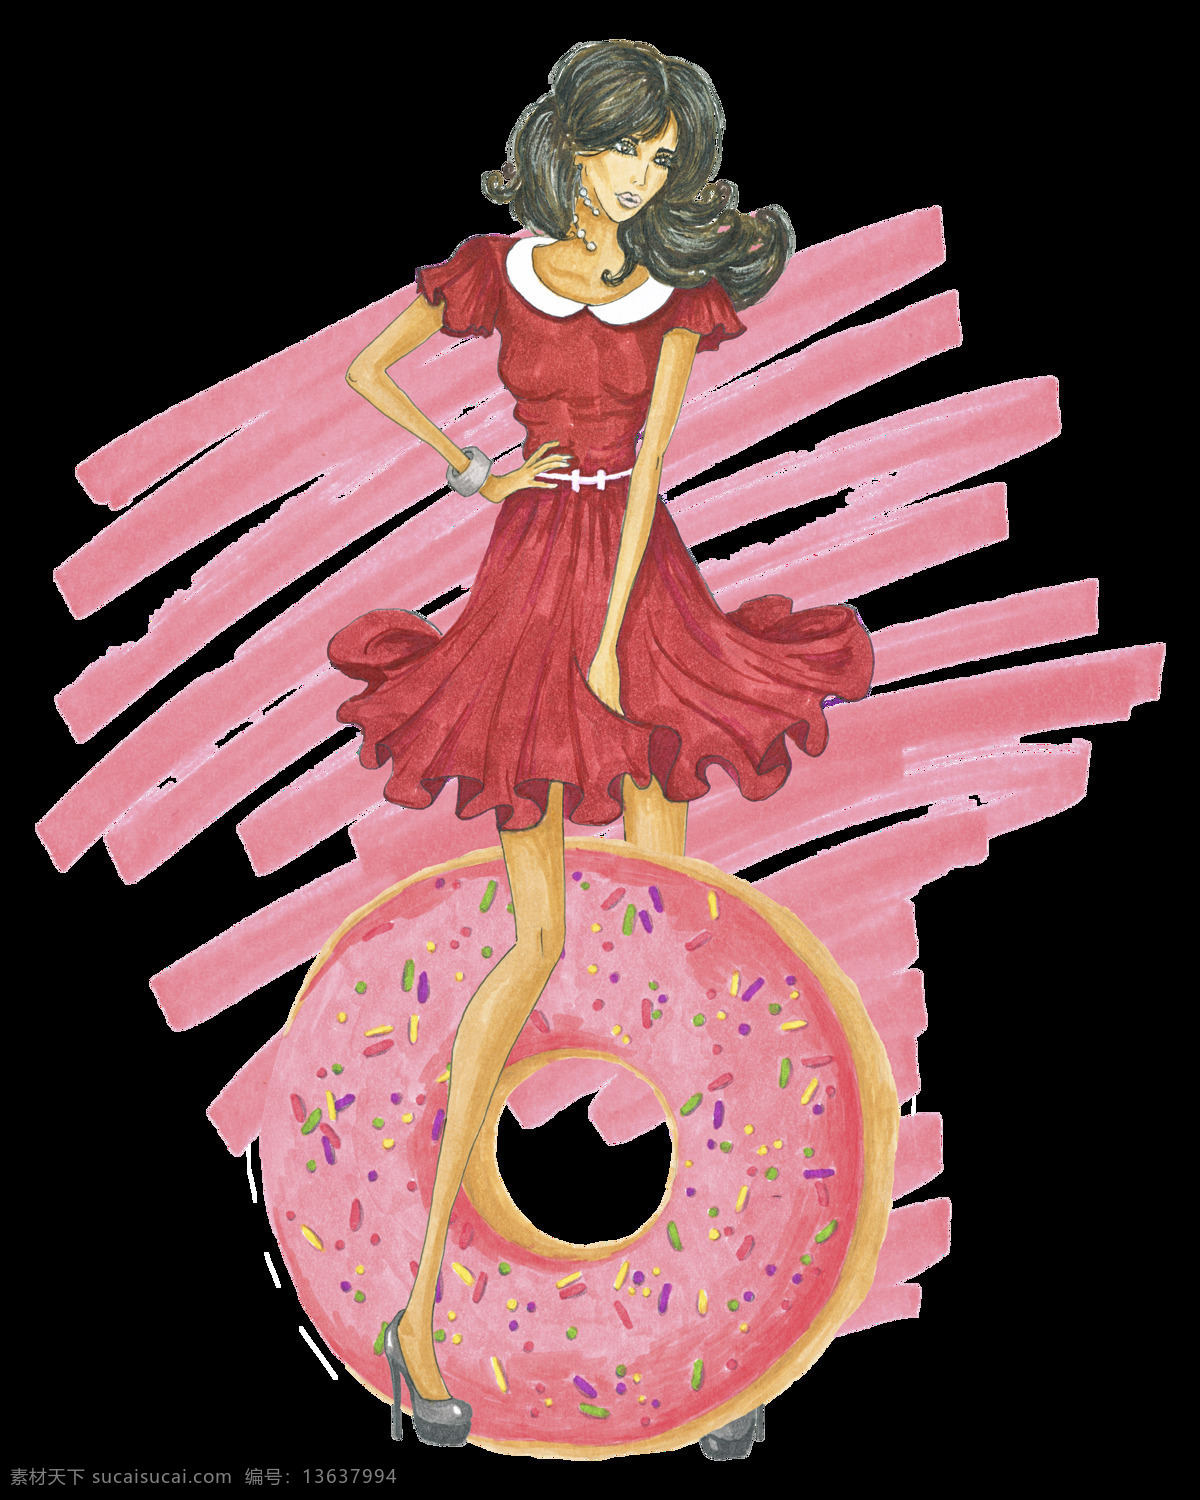 少女 卡通 透明 装饰 粉色 裙子 甜甜圈 矢量素材 设计素材